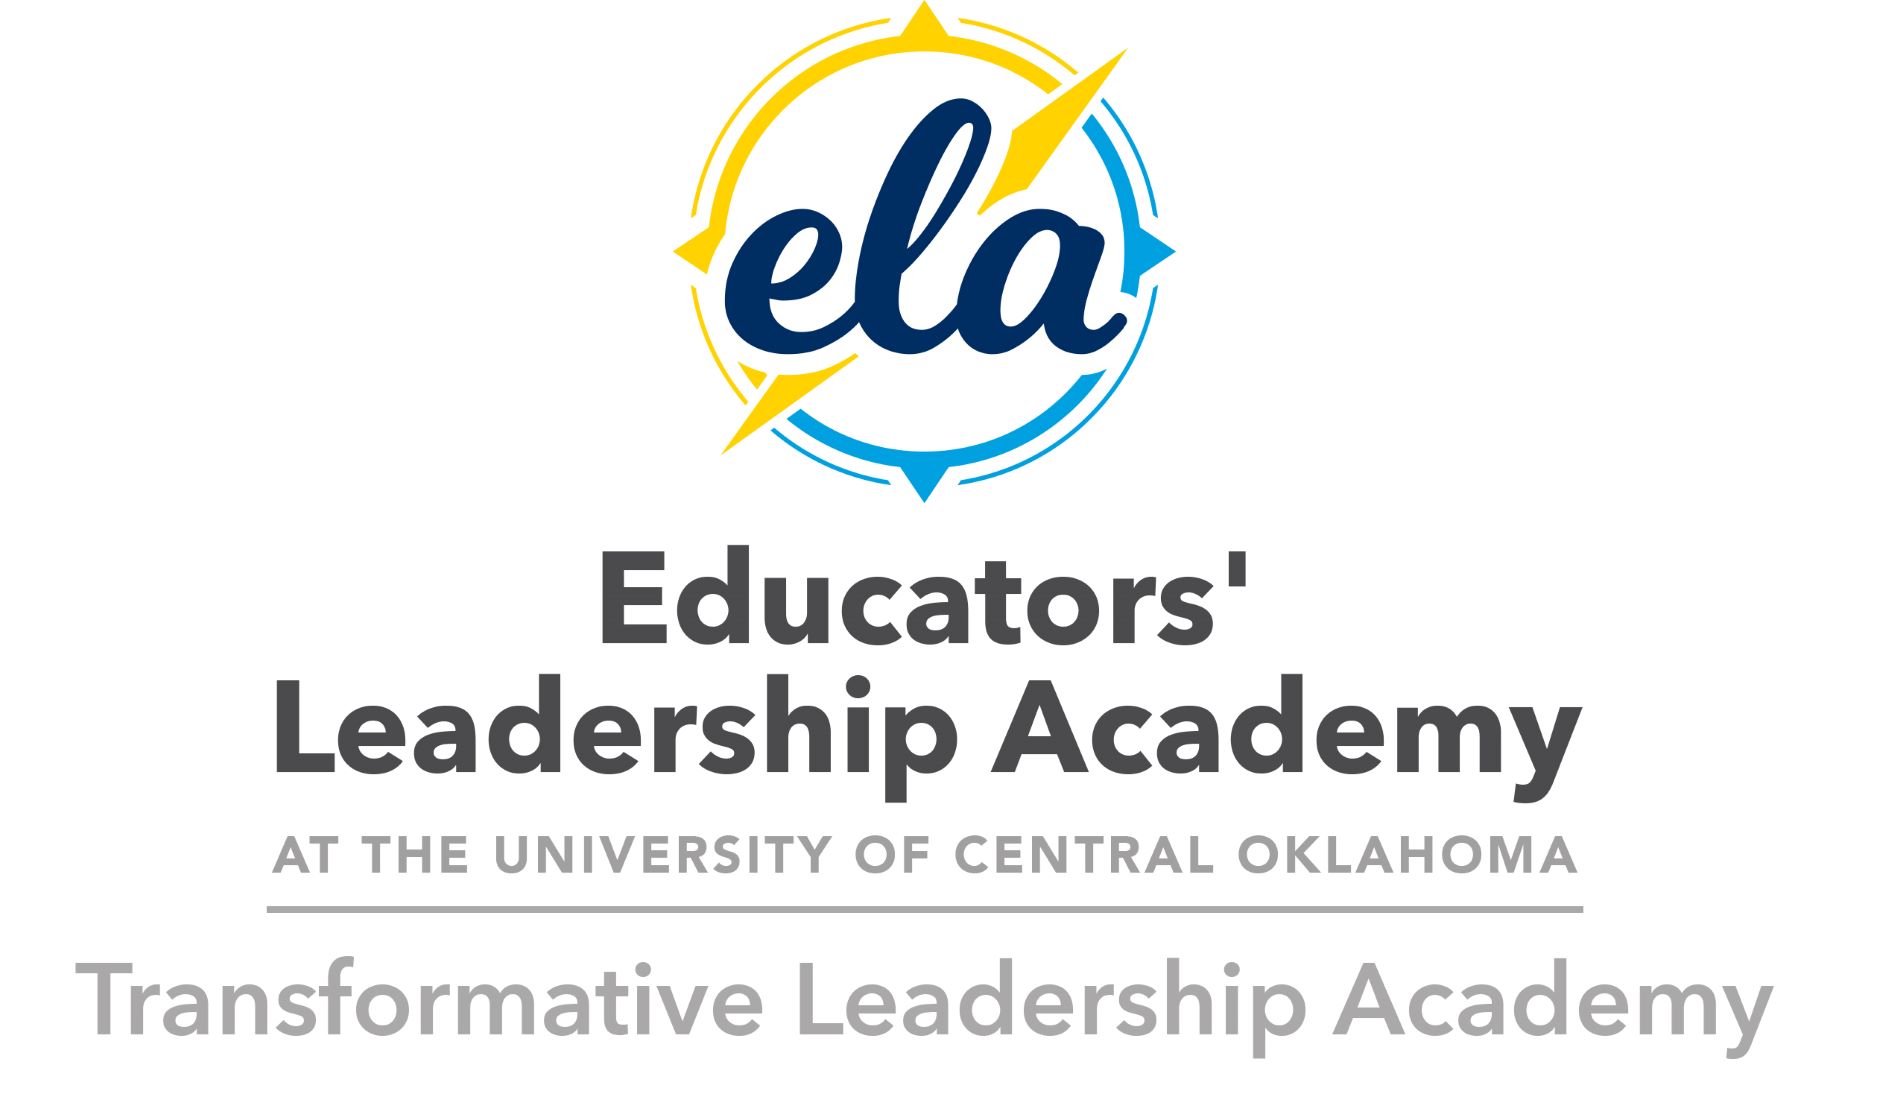 Transformative Leadership Academy